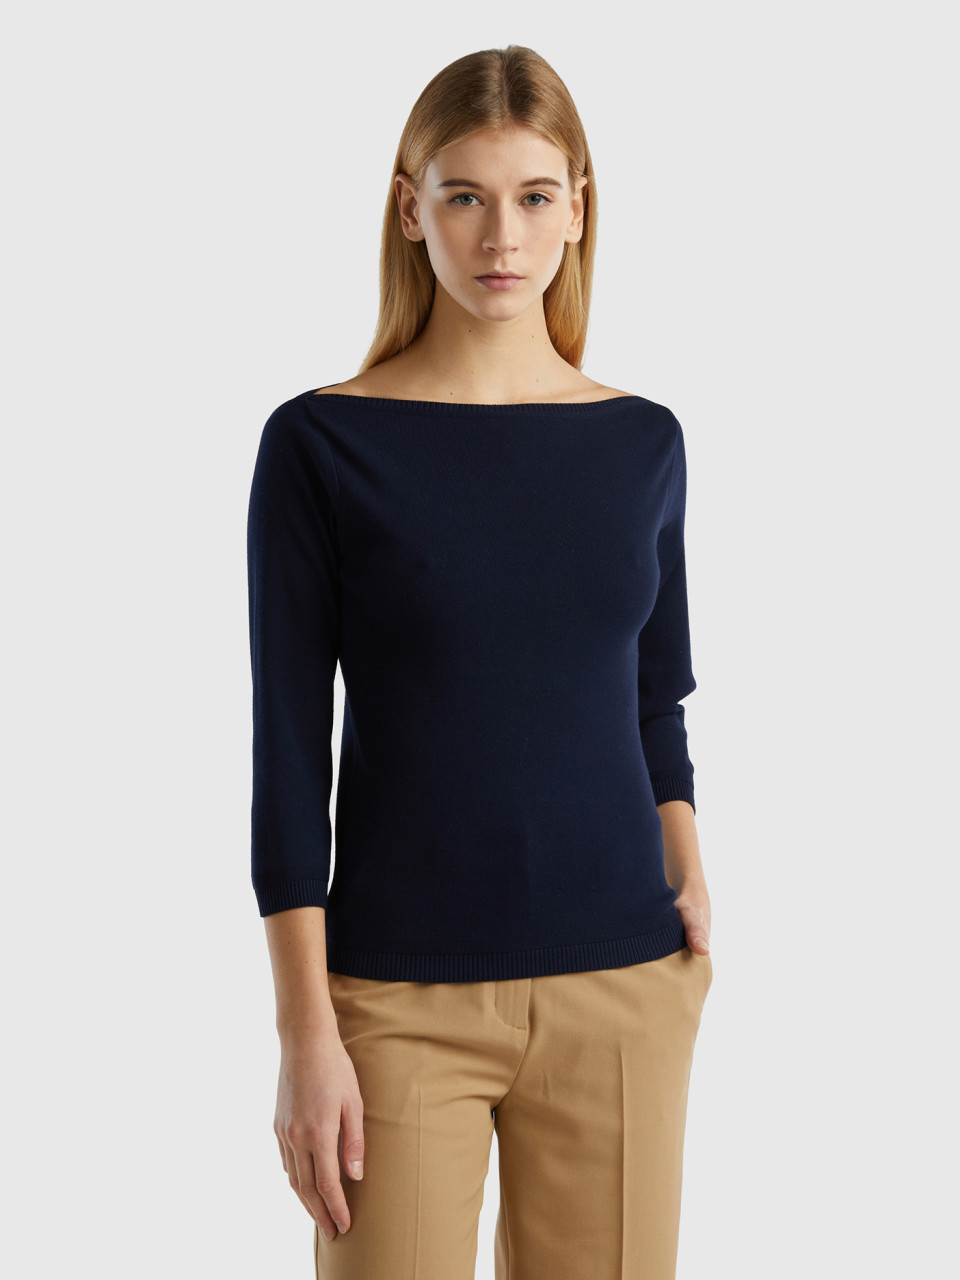 Benetton Online exclusive, 100% Cotton Boat Neck Sweater, Dark Blue, Women